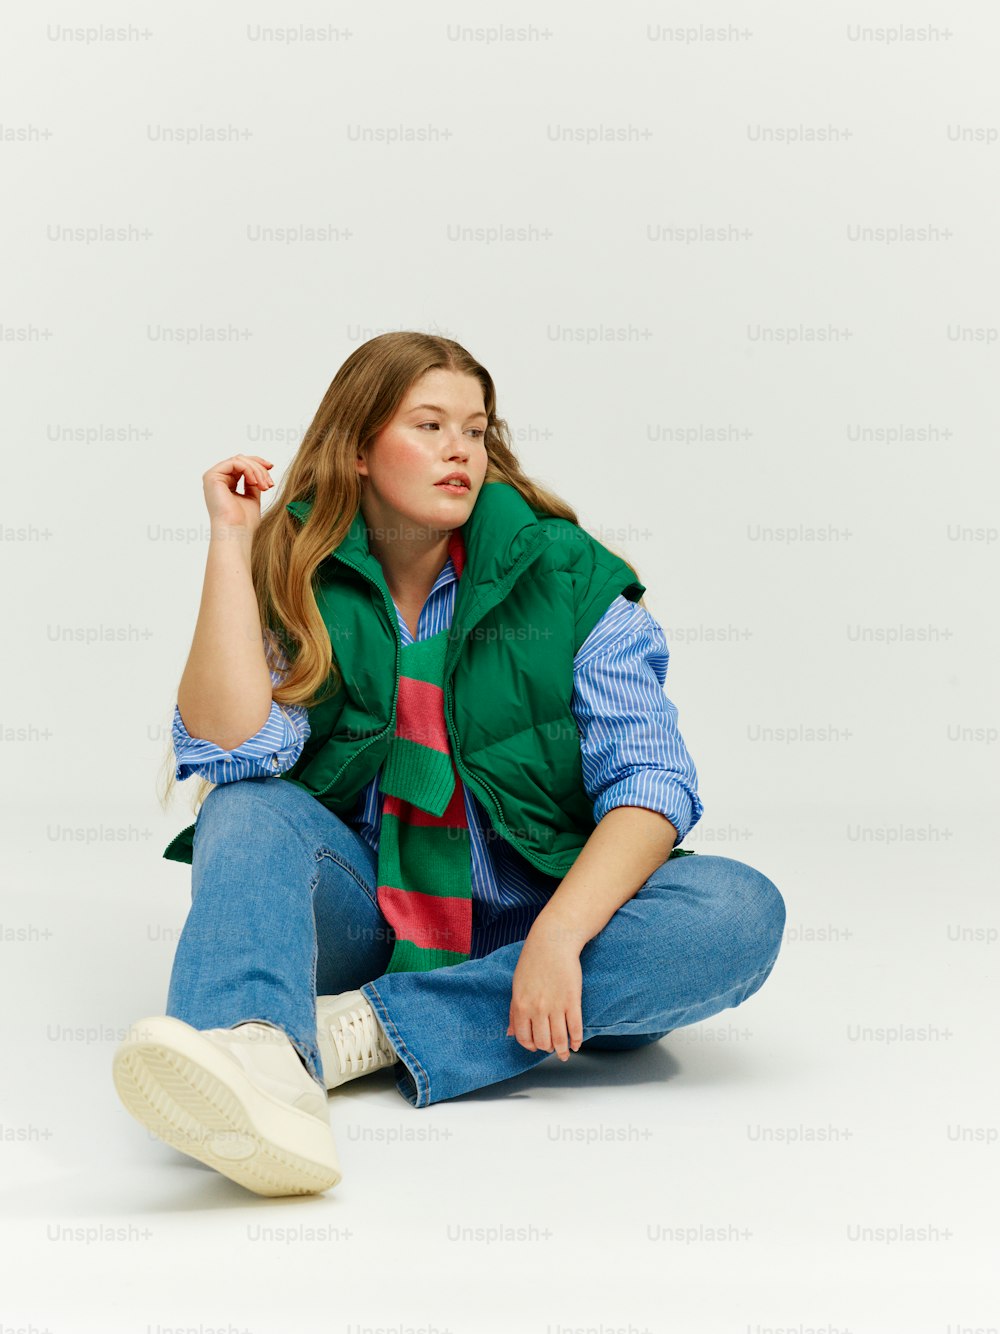 초록색 조끼를 입고 바닥에 앉아 있는 여성